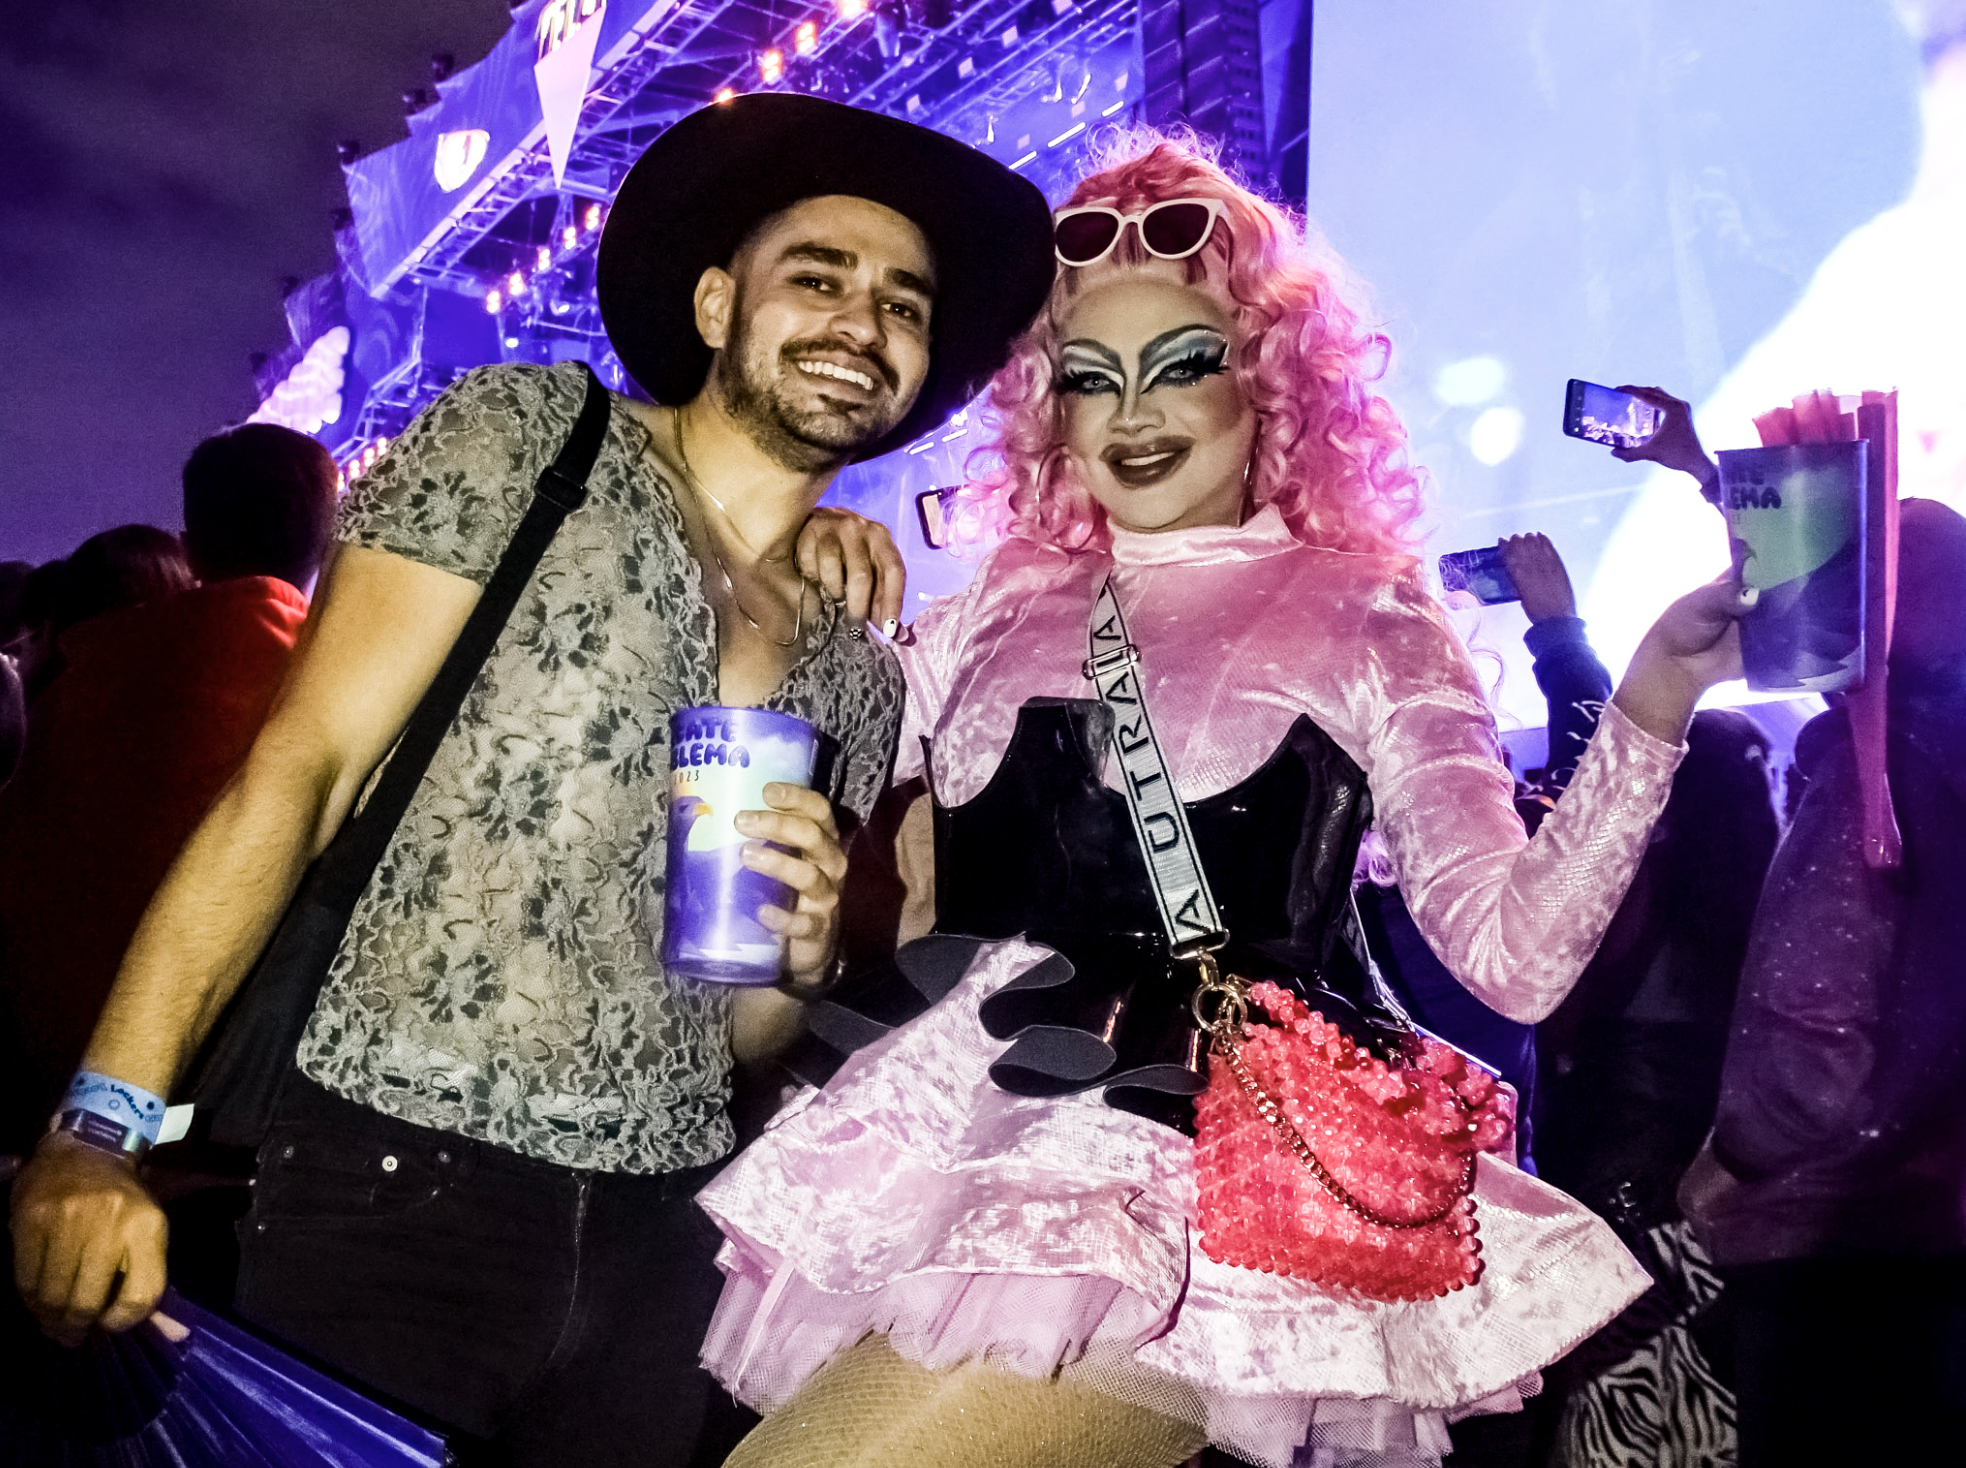 Dos personas disfrutando de un evento musical, una con sombrero y camisa estampada, la otra con atuendo rosa estilo drag queen